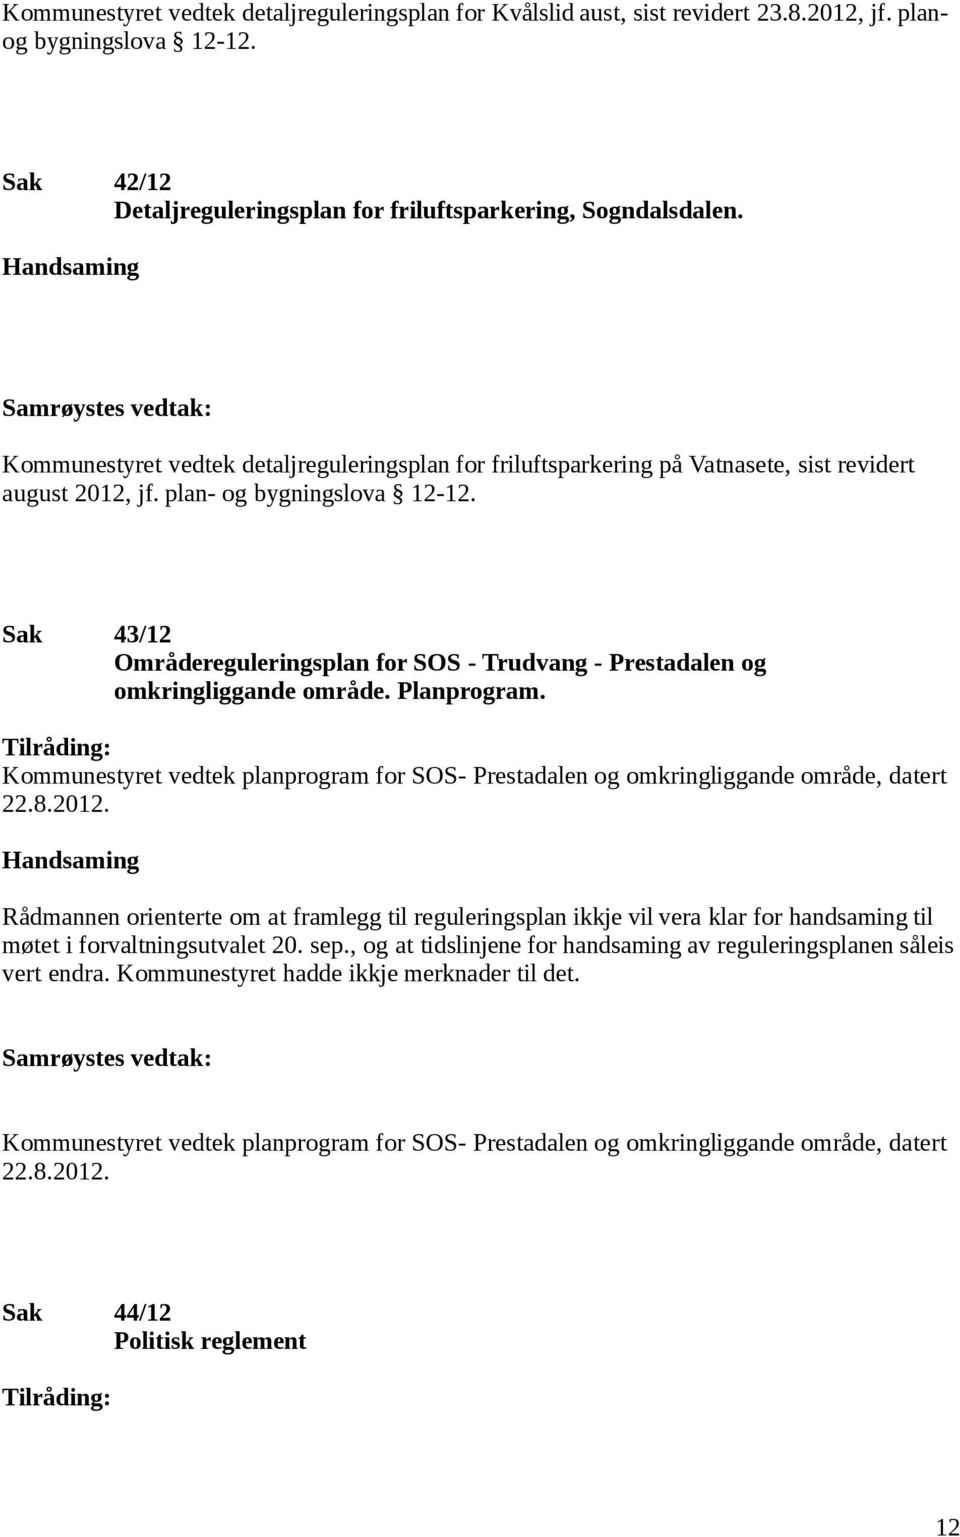 Sak 43/12 Områdereguleringsplan for SOS - Trudvang - Prestadalen og omkringliggande område. Planprogram.